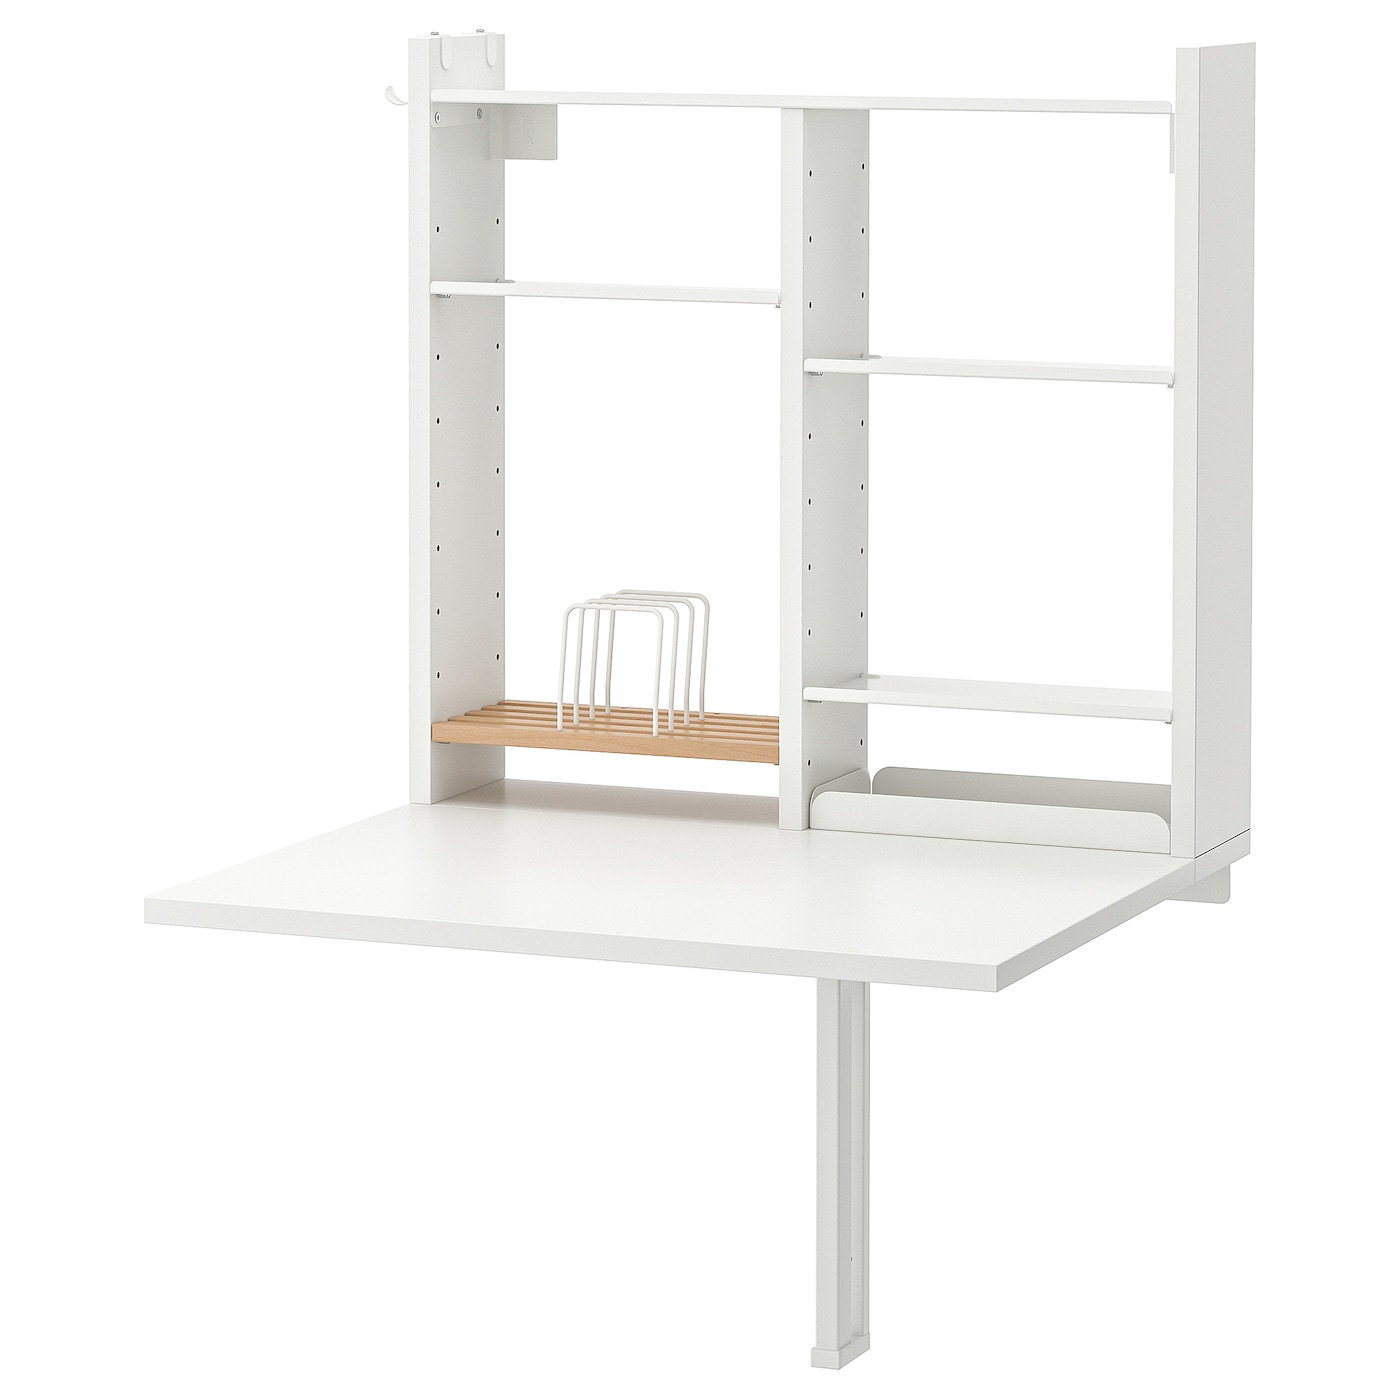 Стол подвесной откидной - IKEA NORBERG, 60х64х75 см, белый, НОРБЕРГ ИКЕА